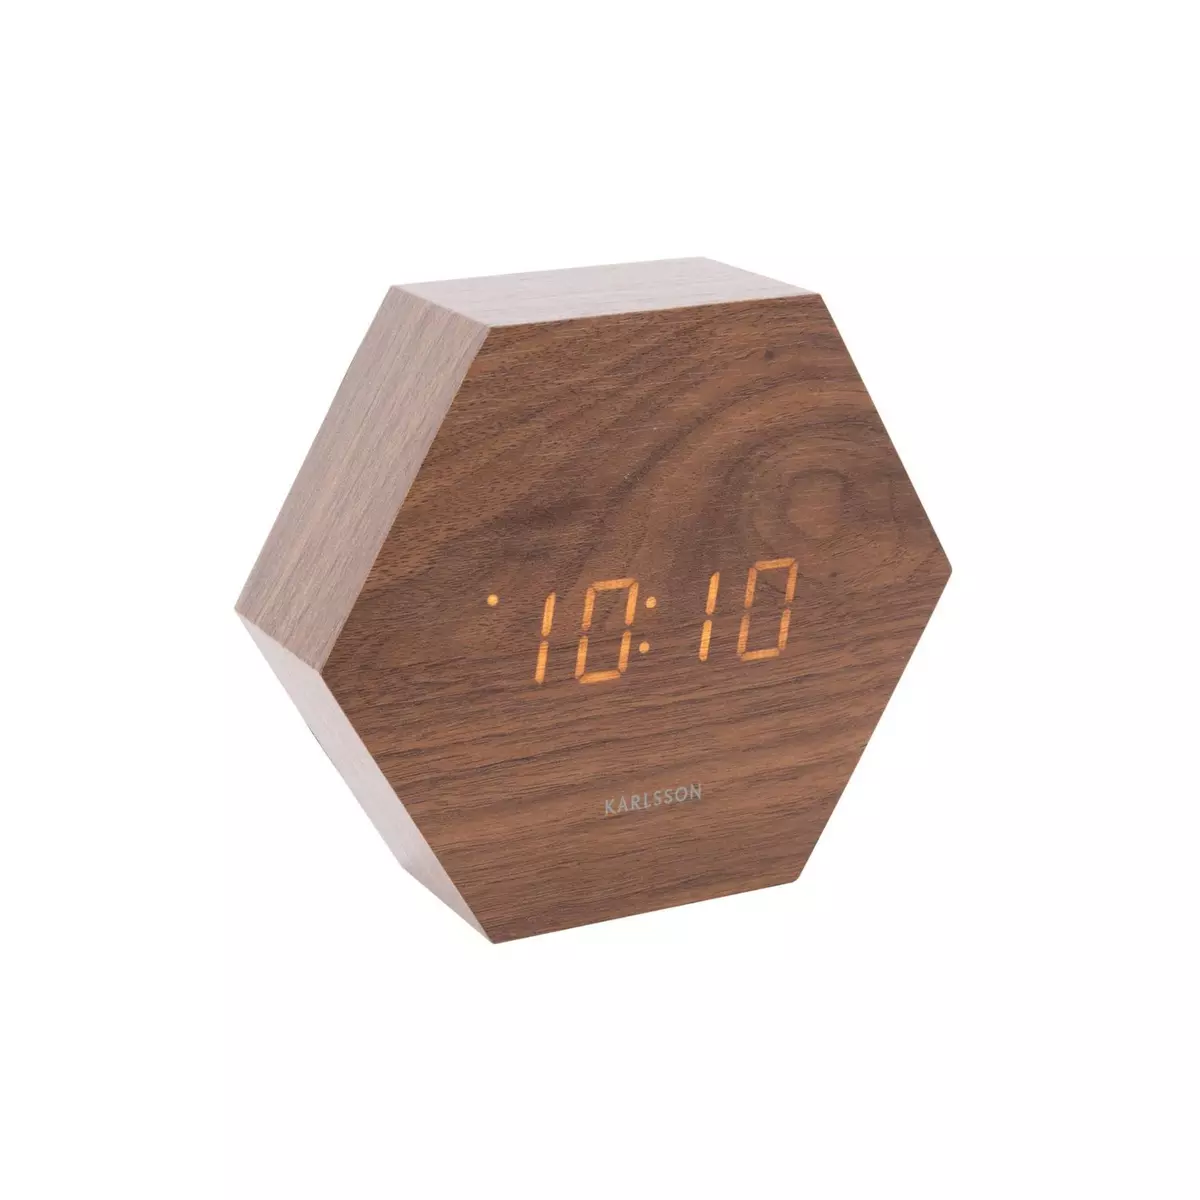 Karlsson Horloge réveil en bois Square - H. 11 cm - Marron